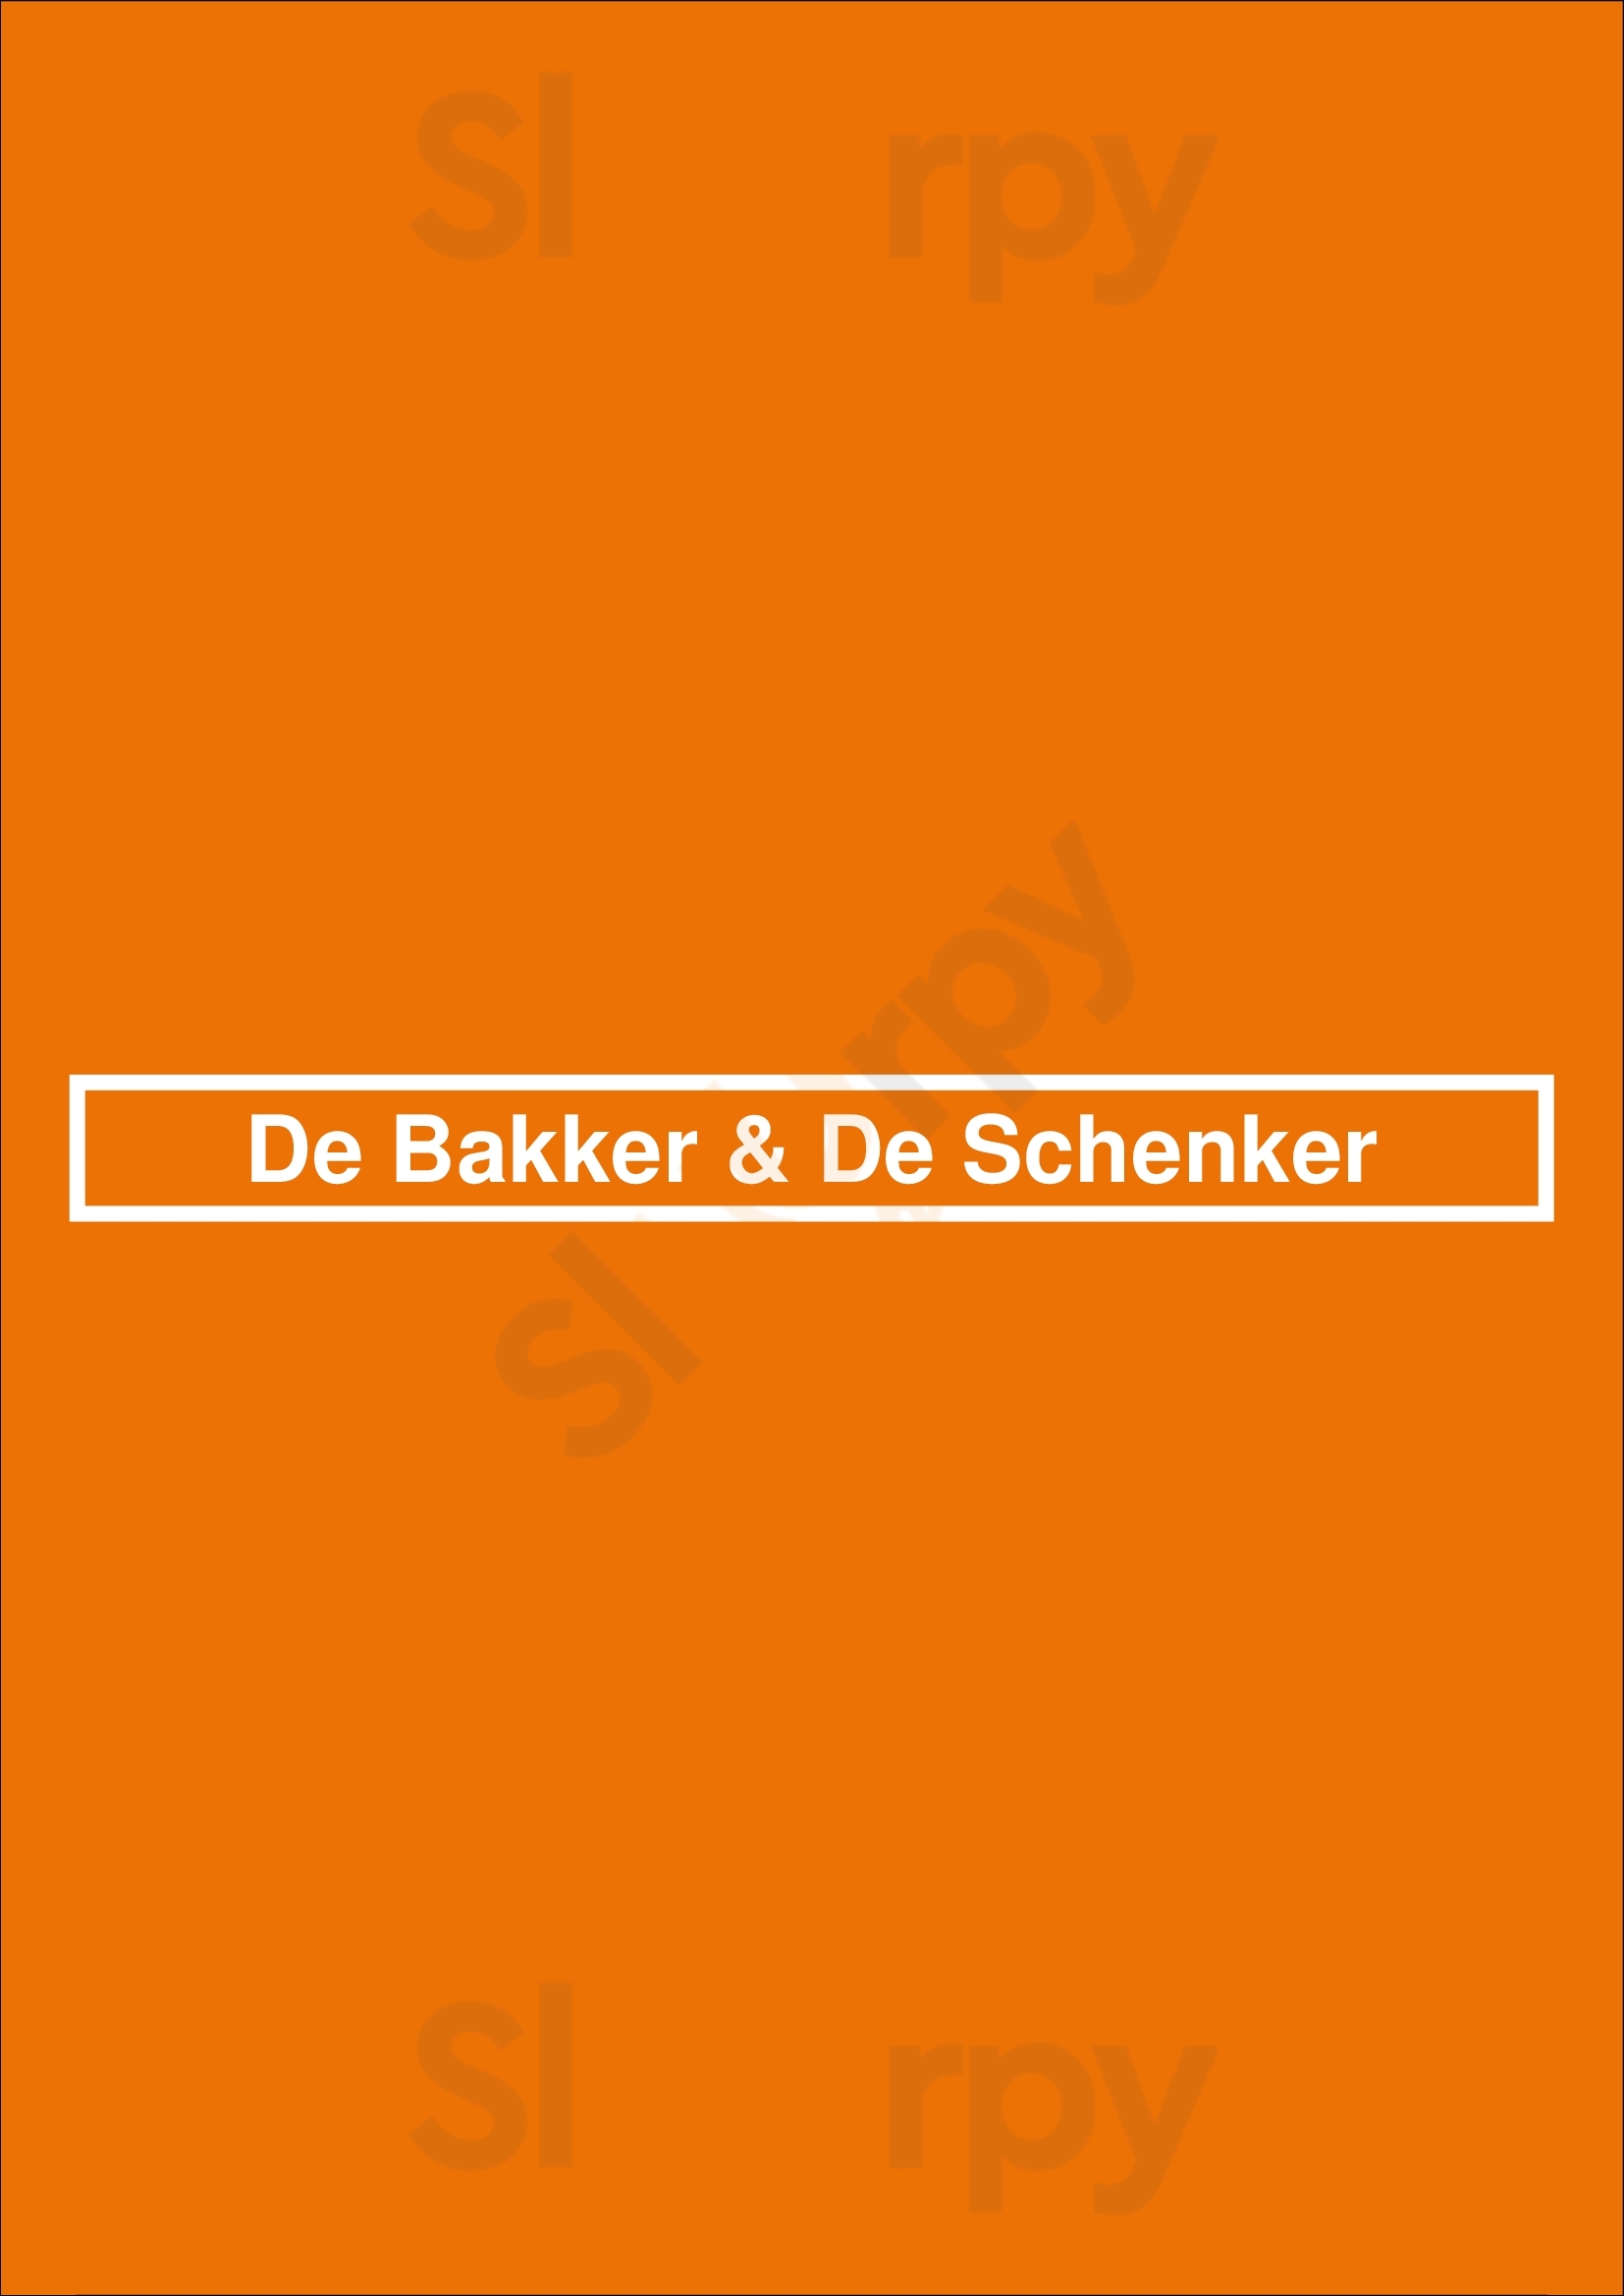 De Bakker & De Schenker Assen Menu - 1